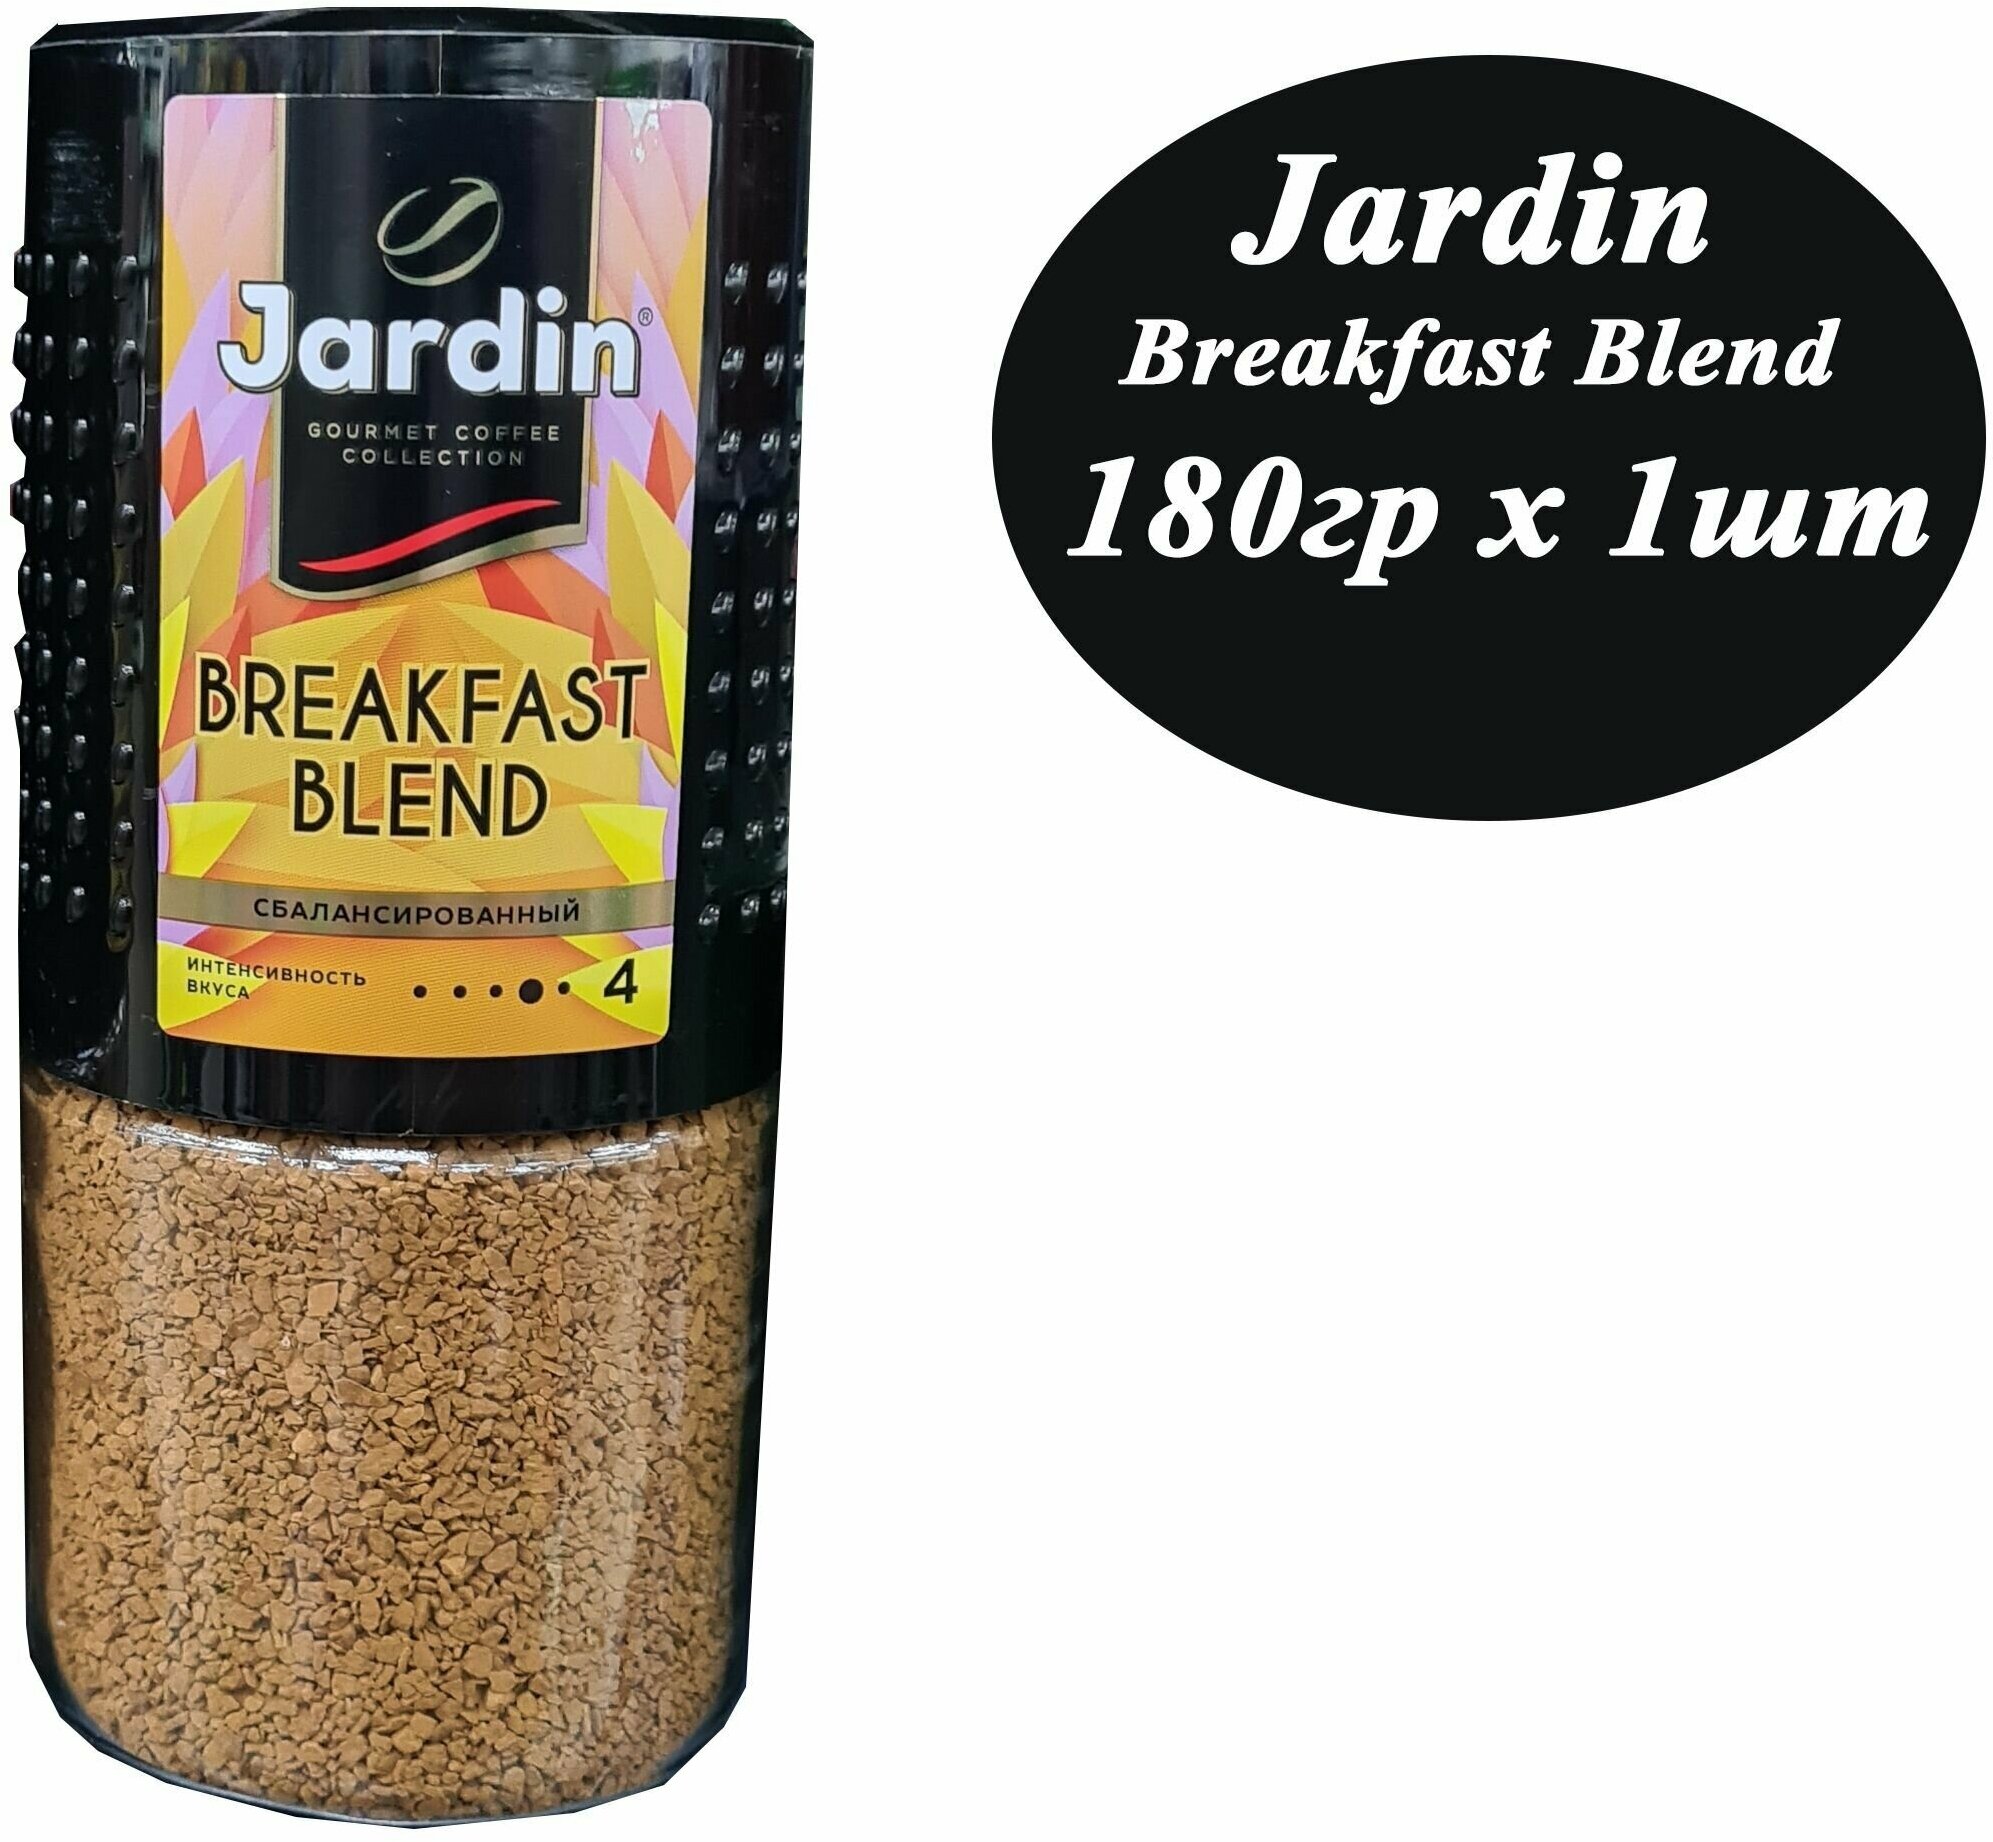 Кофе растворимый JARDIN Breakfast blend 180гр х 1шт, сублимированный, стекло